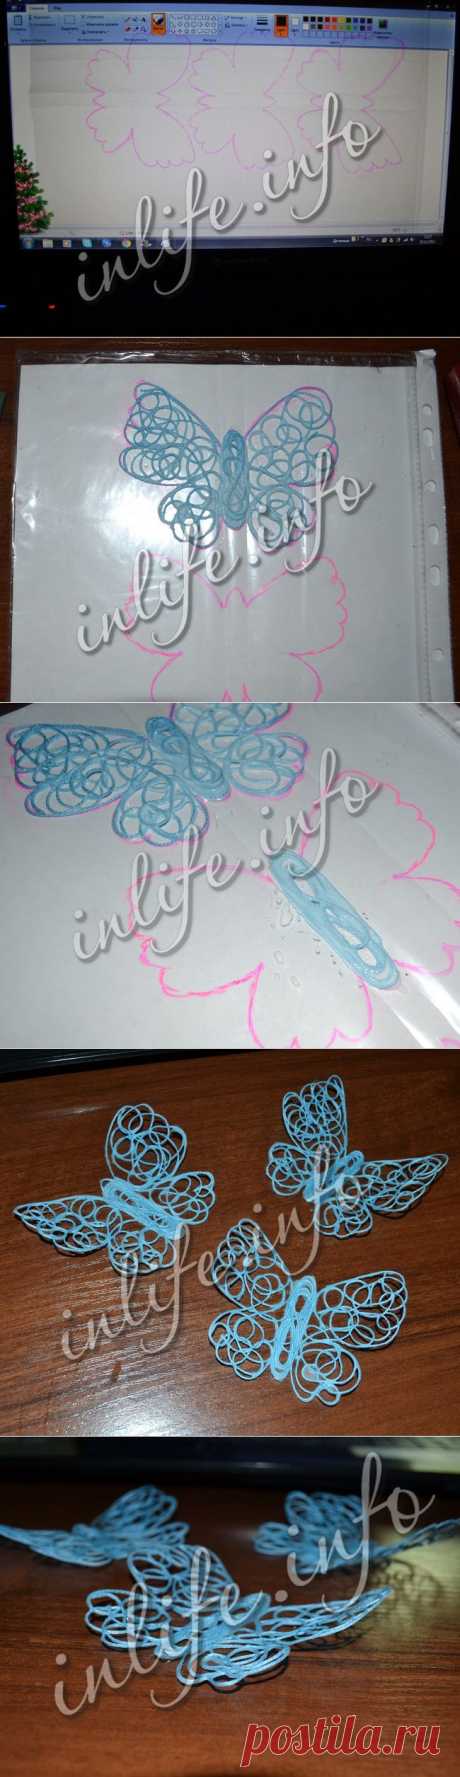 Как сделать ажурных бабочек из ниток?.. (мастер-класс Anastasia Gor) | Inlife.info